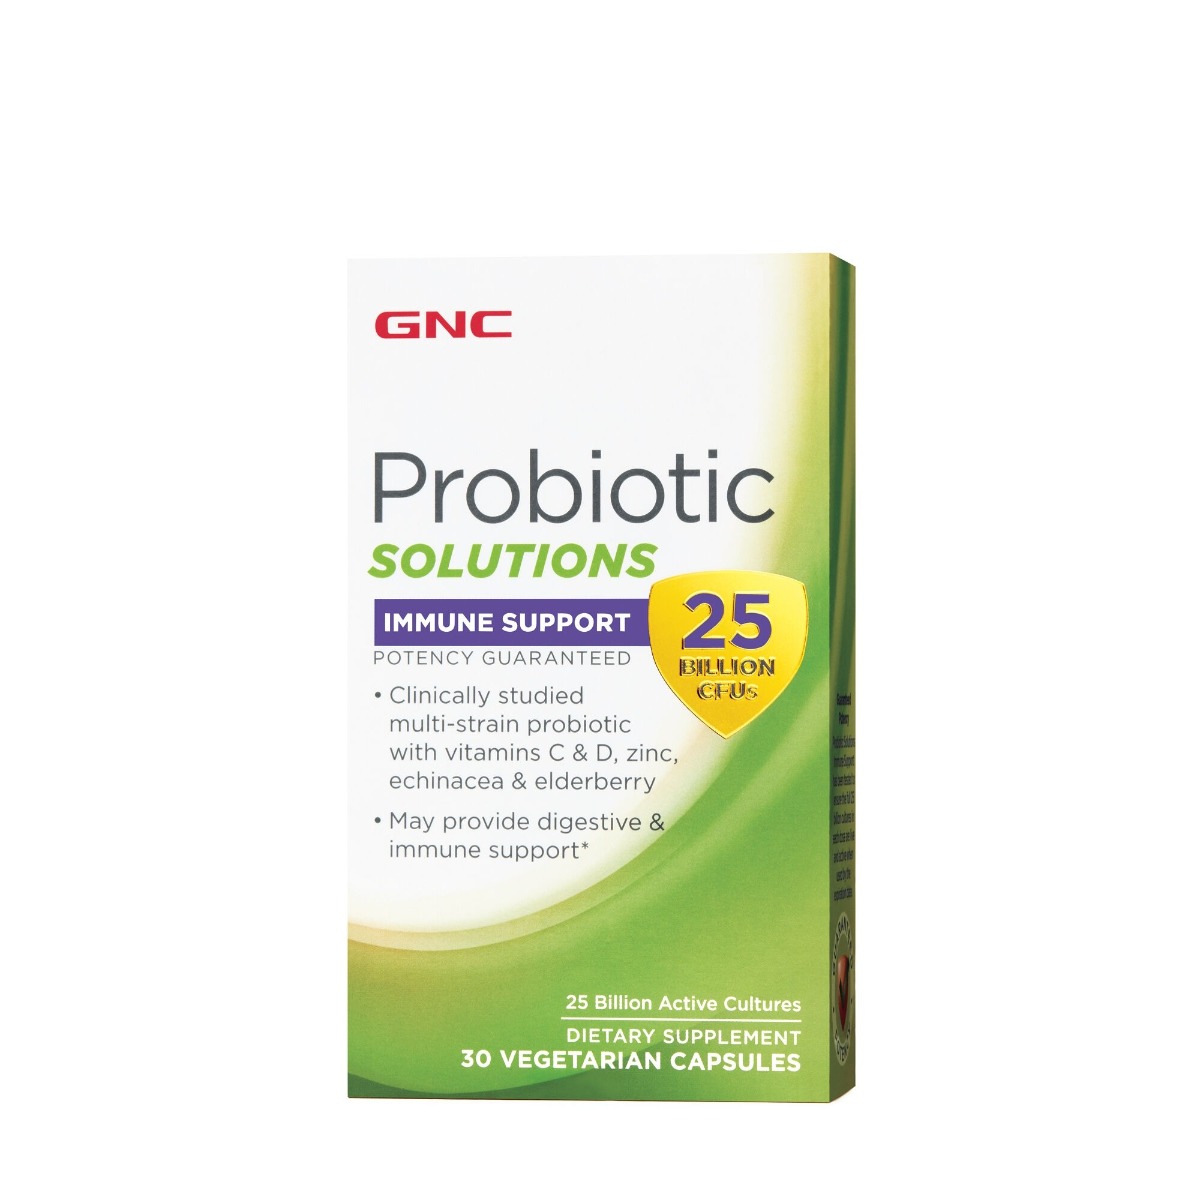 Probiotic solutions Immune Support 25 Billion CFUs, 30 capsule, GNC